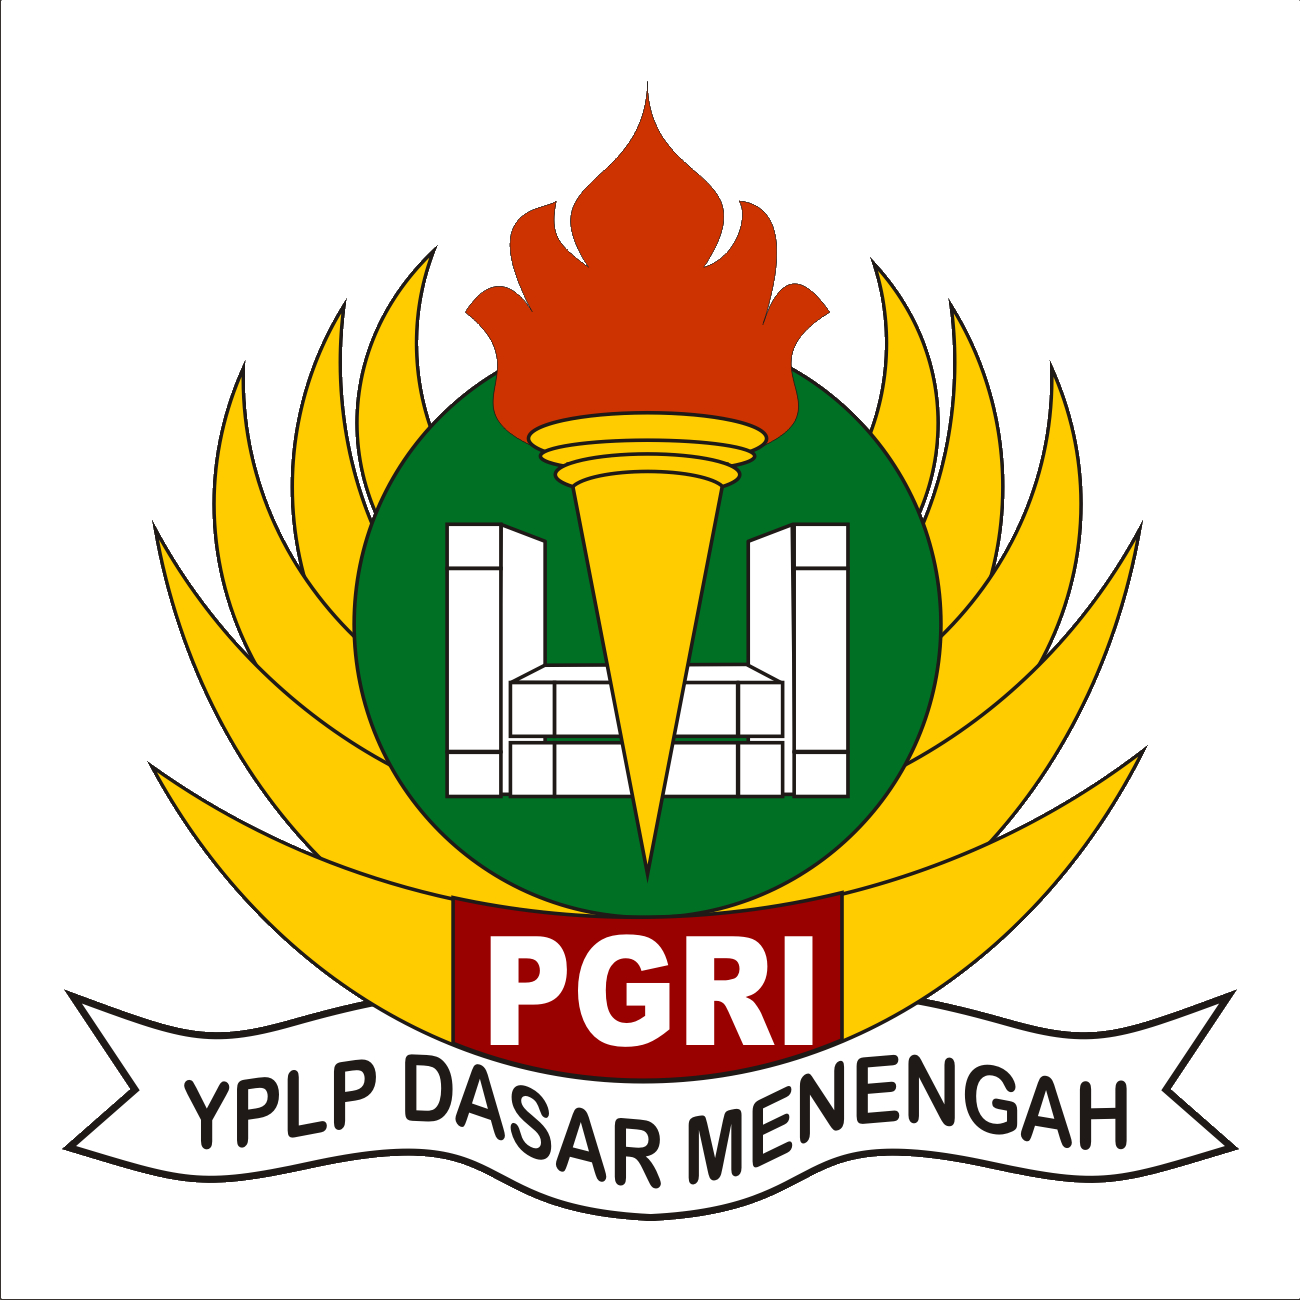 Makna Logo Lambang Yayayasan YPLP PGRI Terbaru - Pusat Ilmu dan Pengetahuan